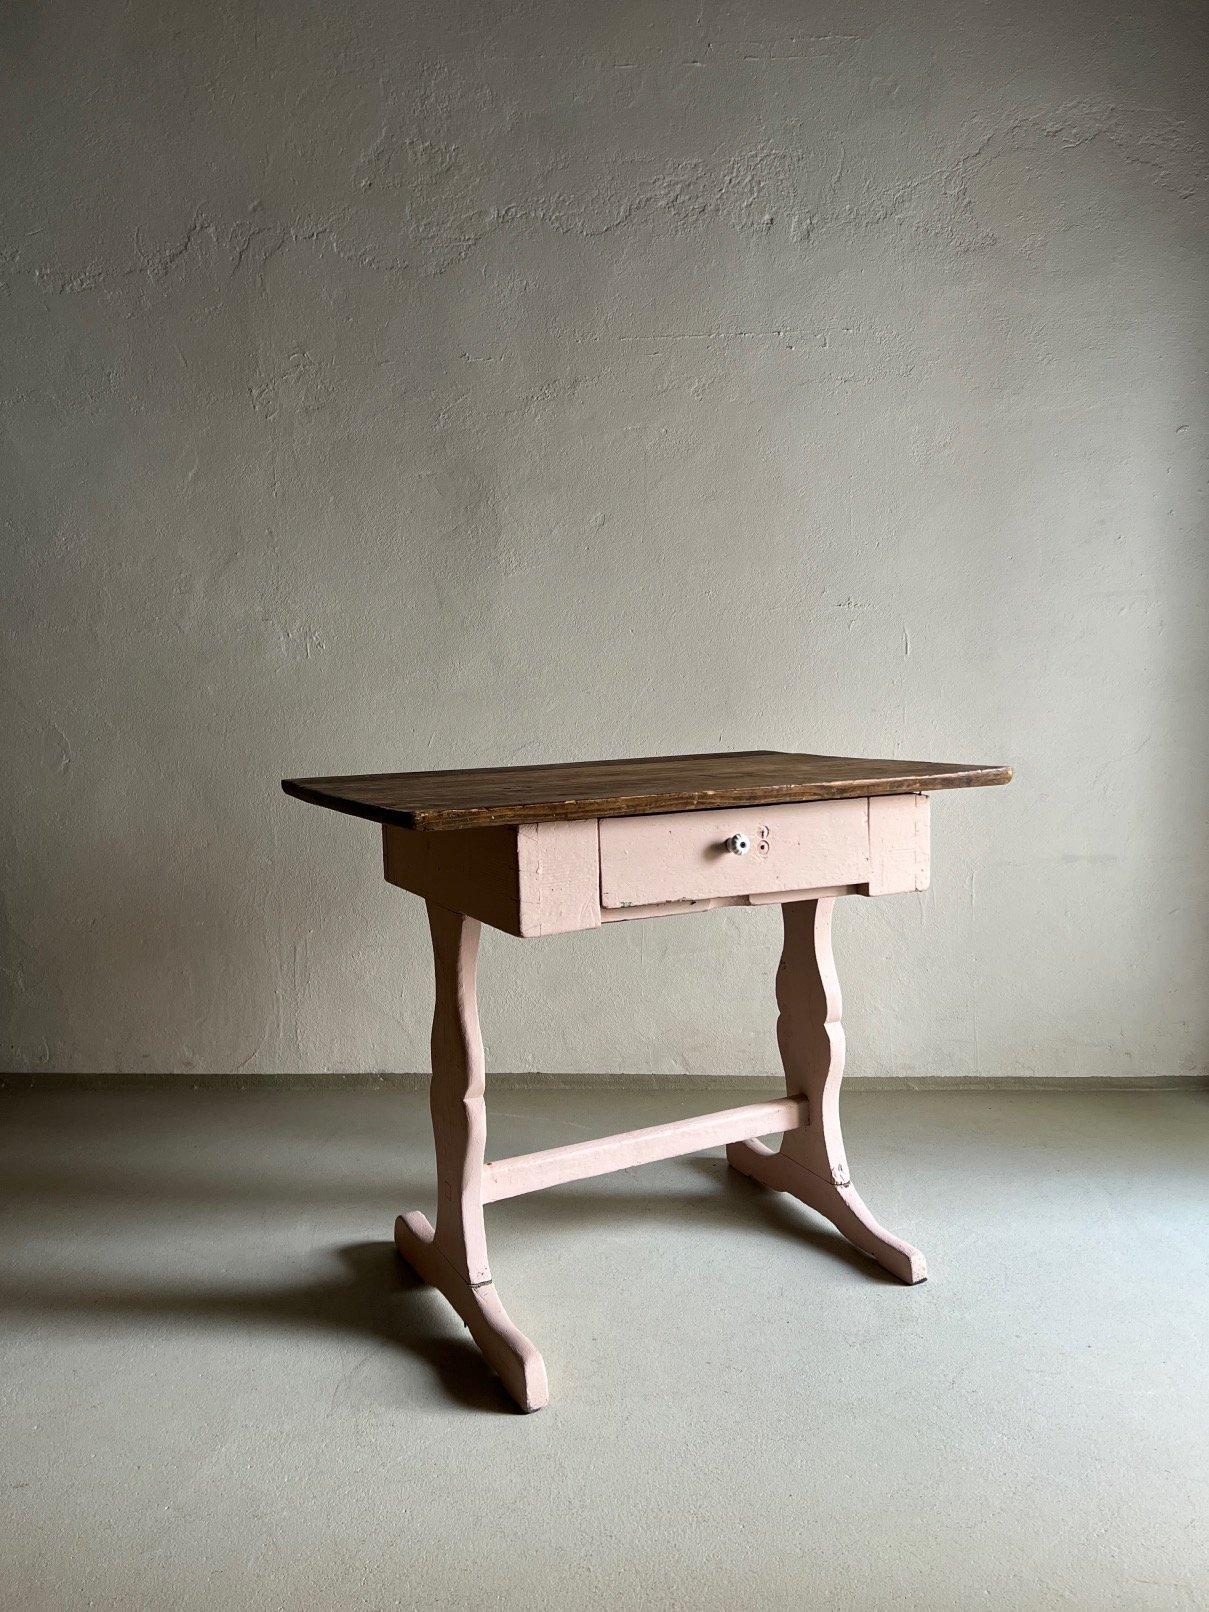 Antiker rustikaler Beistelltisch oder Schreibtisch mit einer Schublade, kann auch als kleiner Küchentisch verwendet werden. Schöne Patina.

Zusätzliche Informationen:
Herkunftsort - Die Niederlande
Abmessungen: 90 B x 63 T x 77 H cm